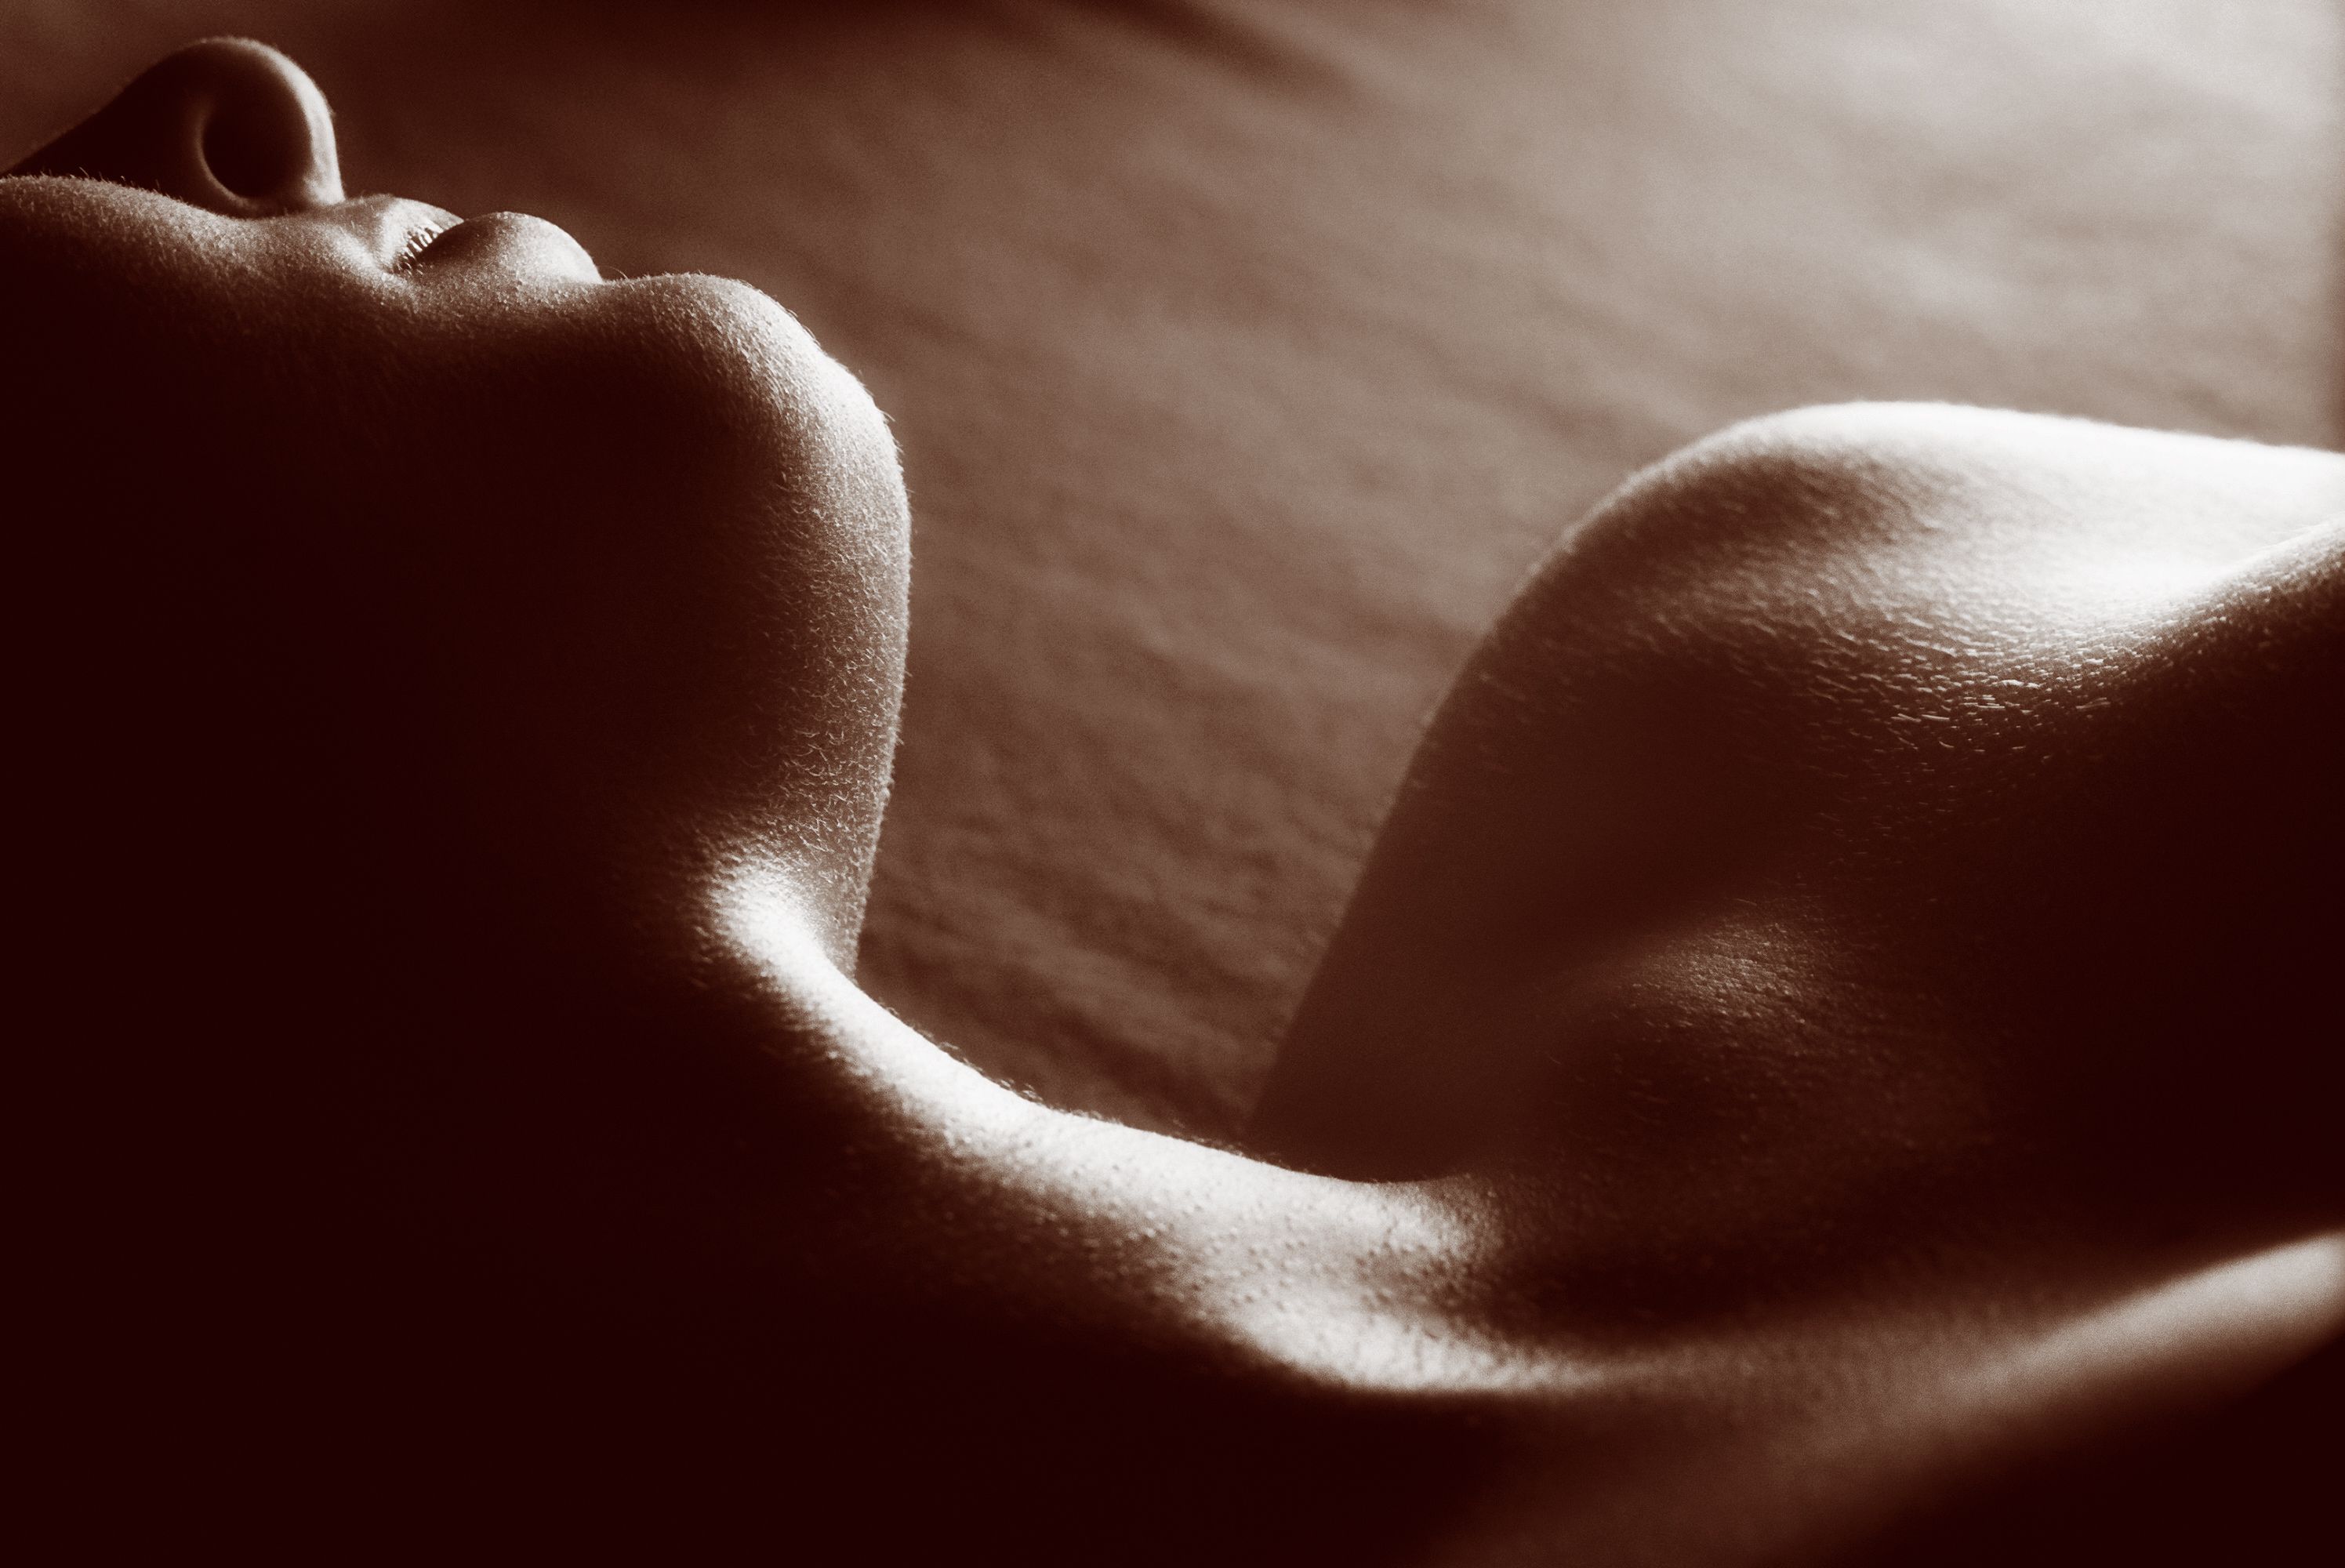 Nudist Lifestyle Tumblr - Free the nipple! Tumblr is bringing back nudity